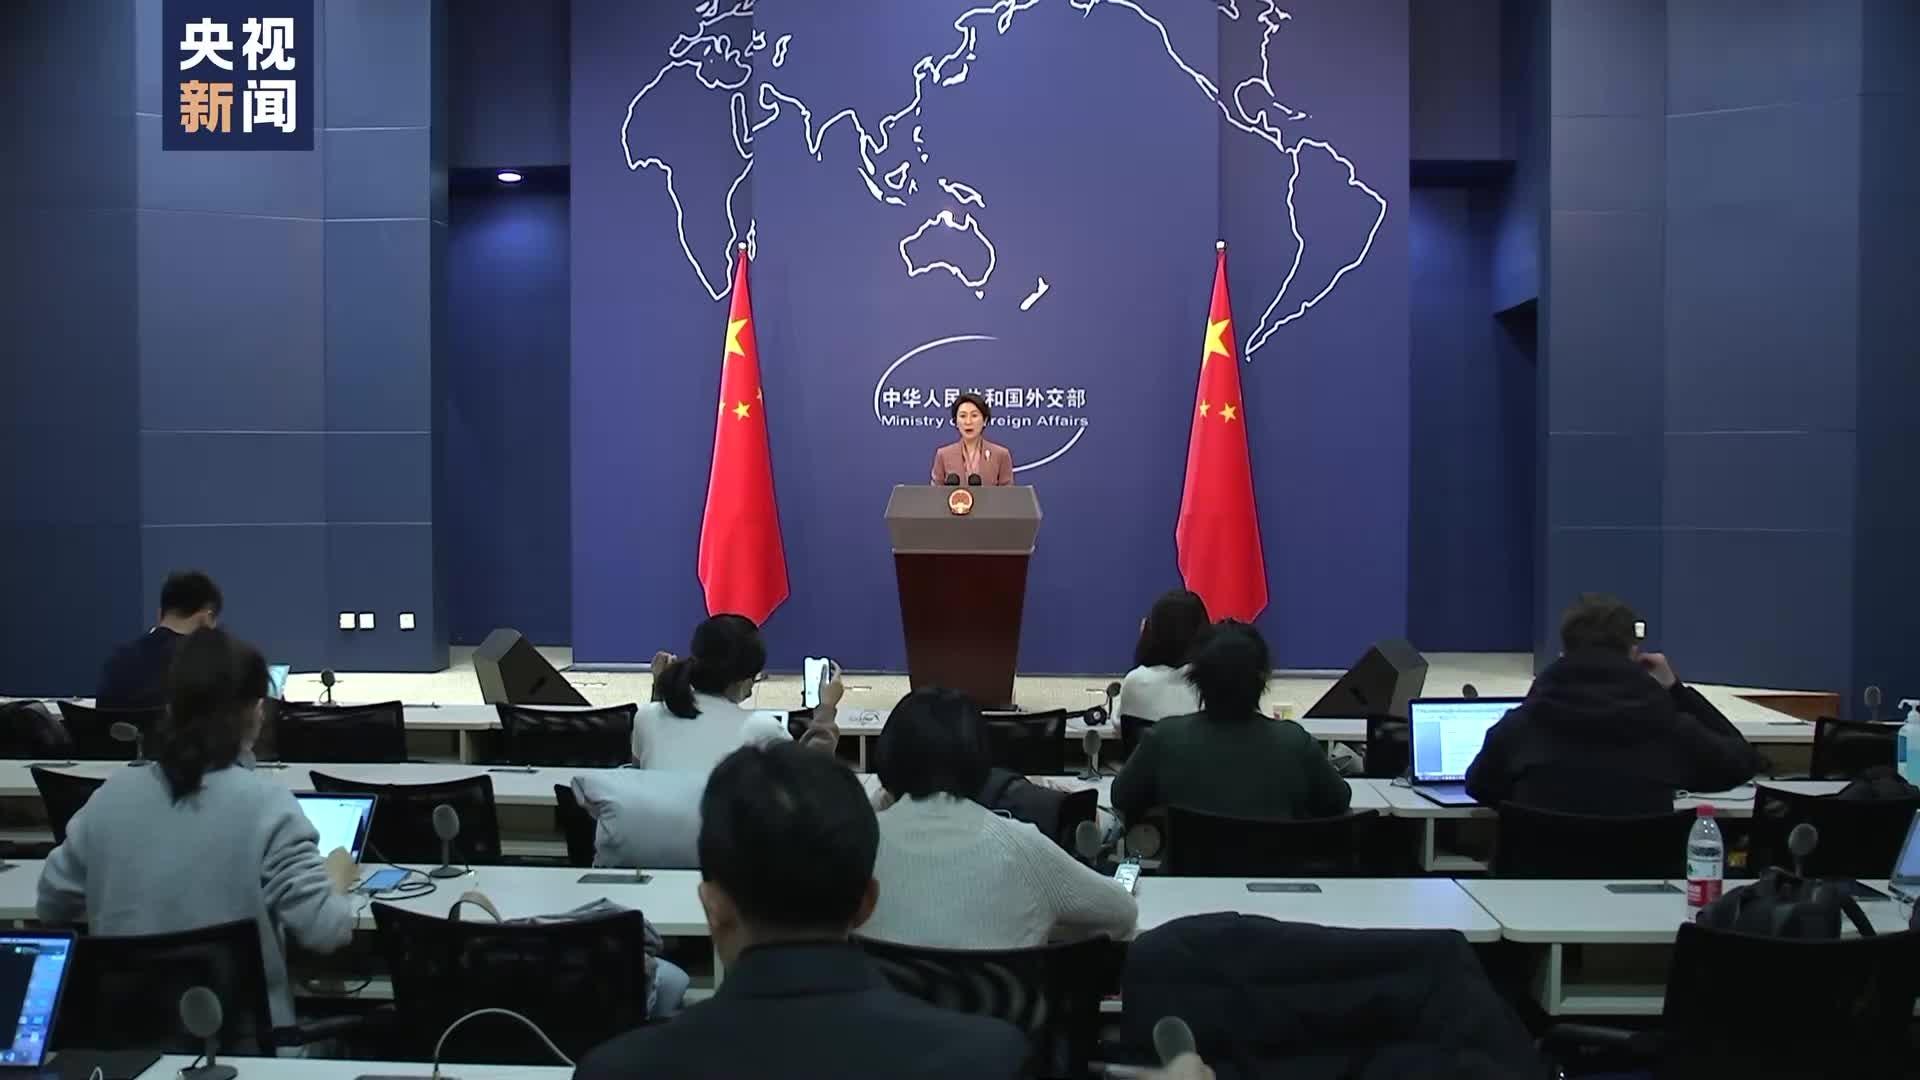 تصمیم چین برای گسترش فهرست کشورهای معاف از روادید یک طرفها